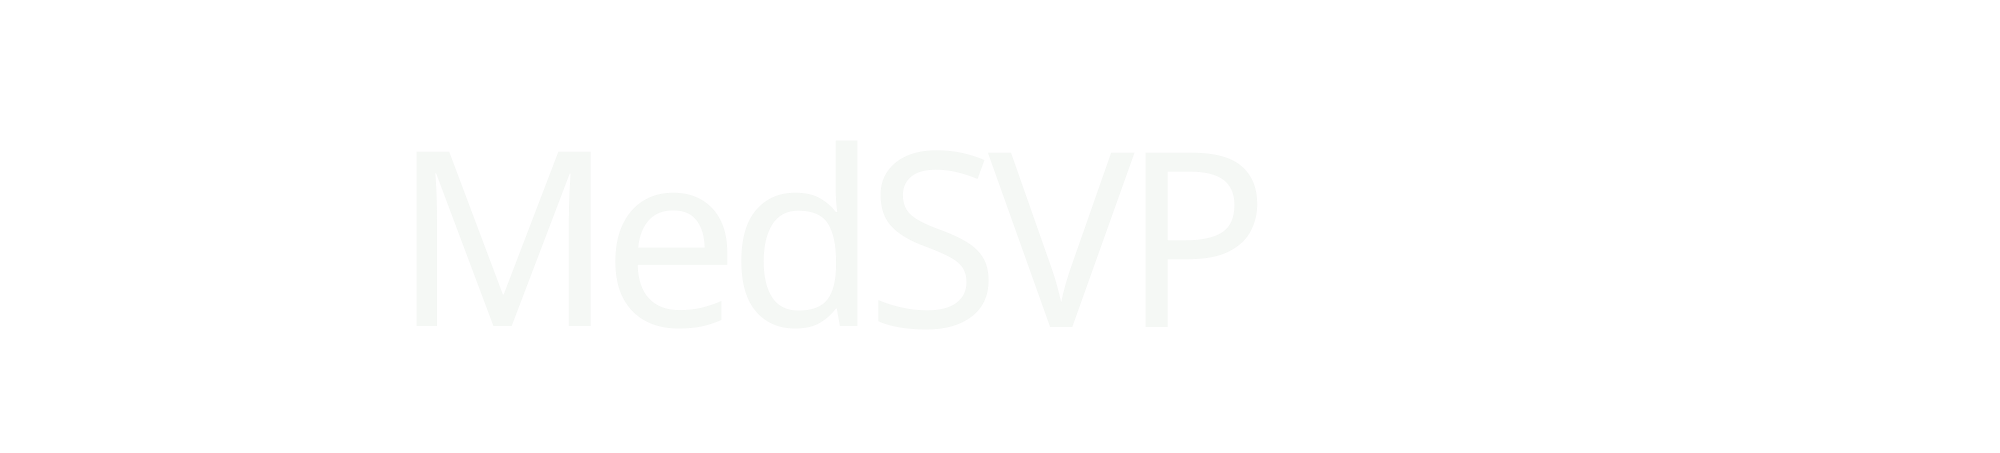 MedSVP logo